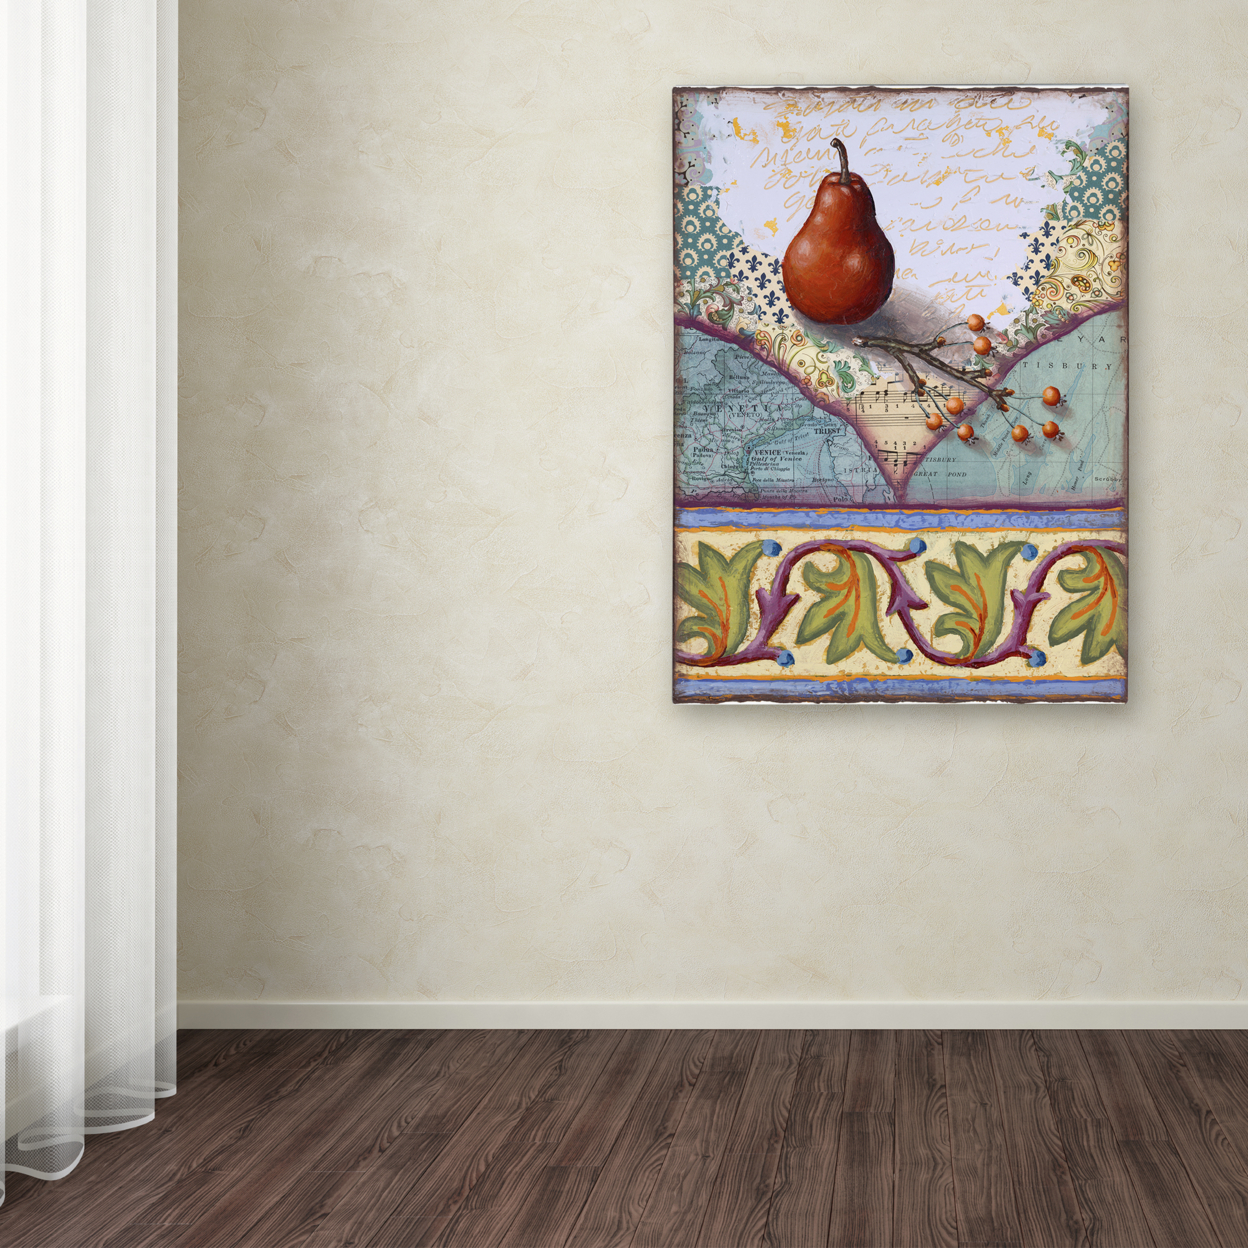 Rachel Paxton 'LC Pear' Canvas Wall Art 35 X 47 Inches